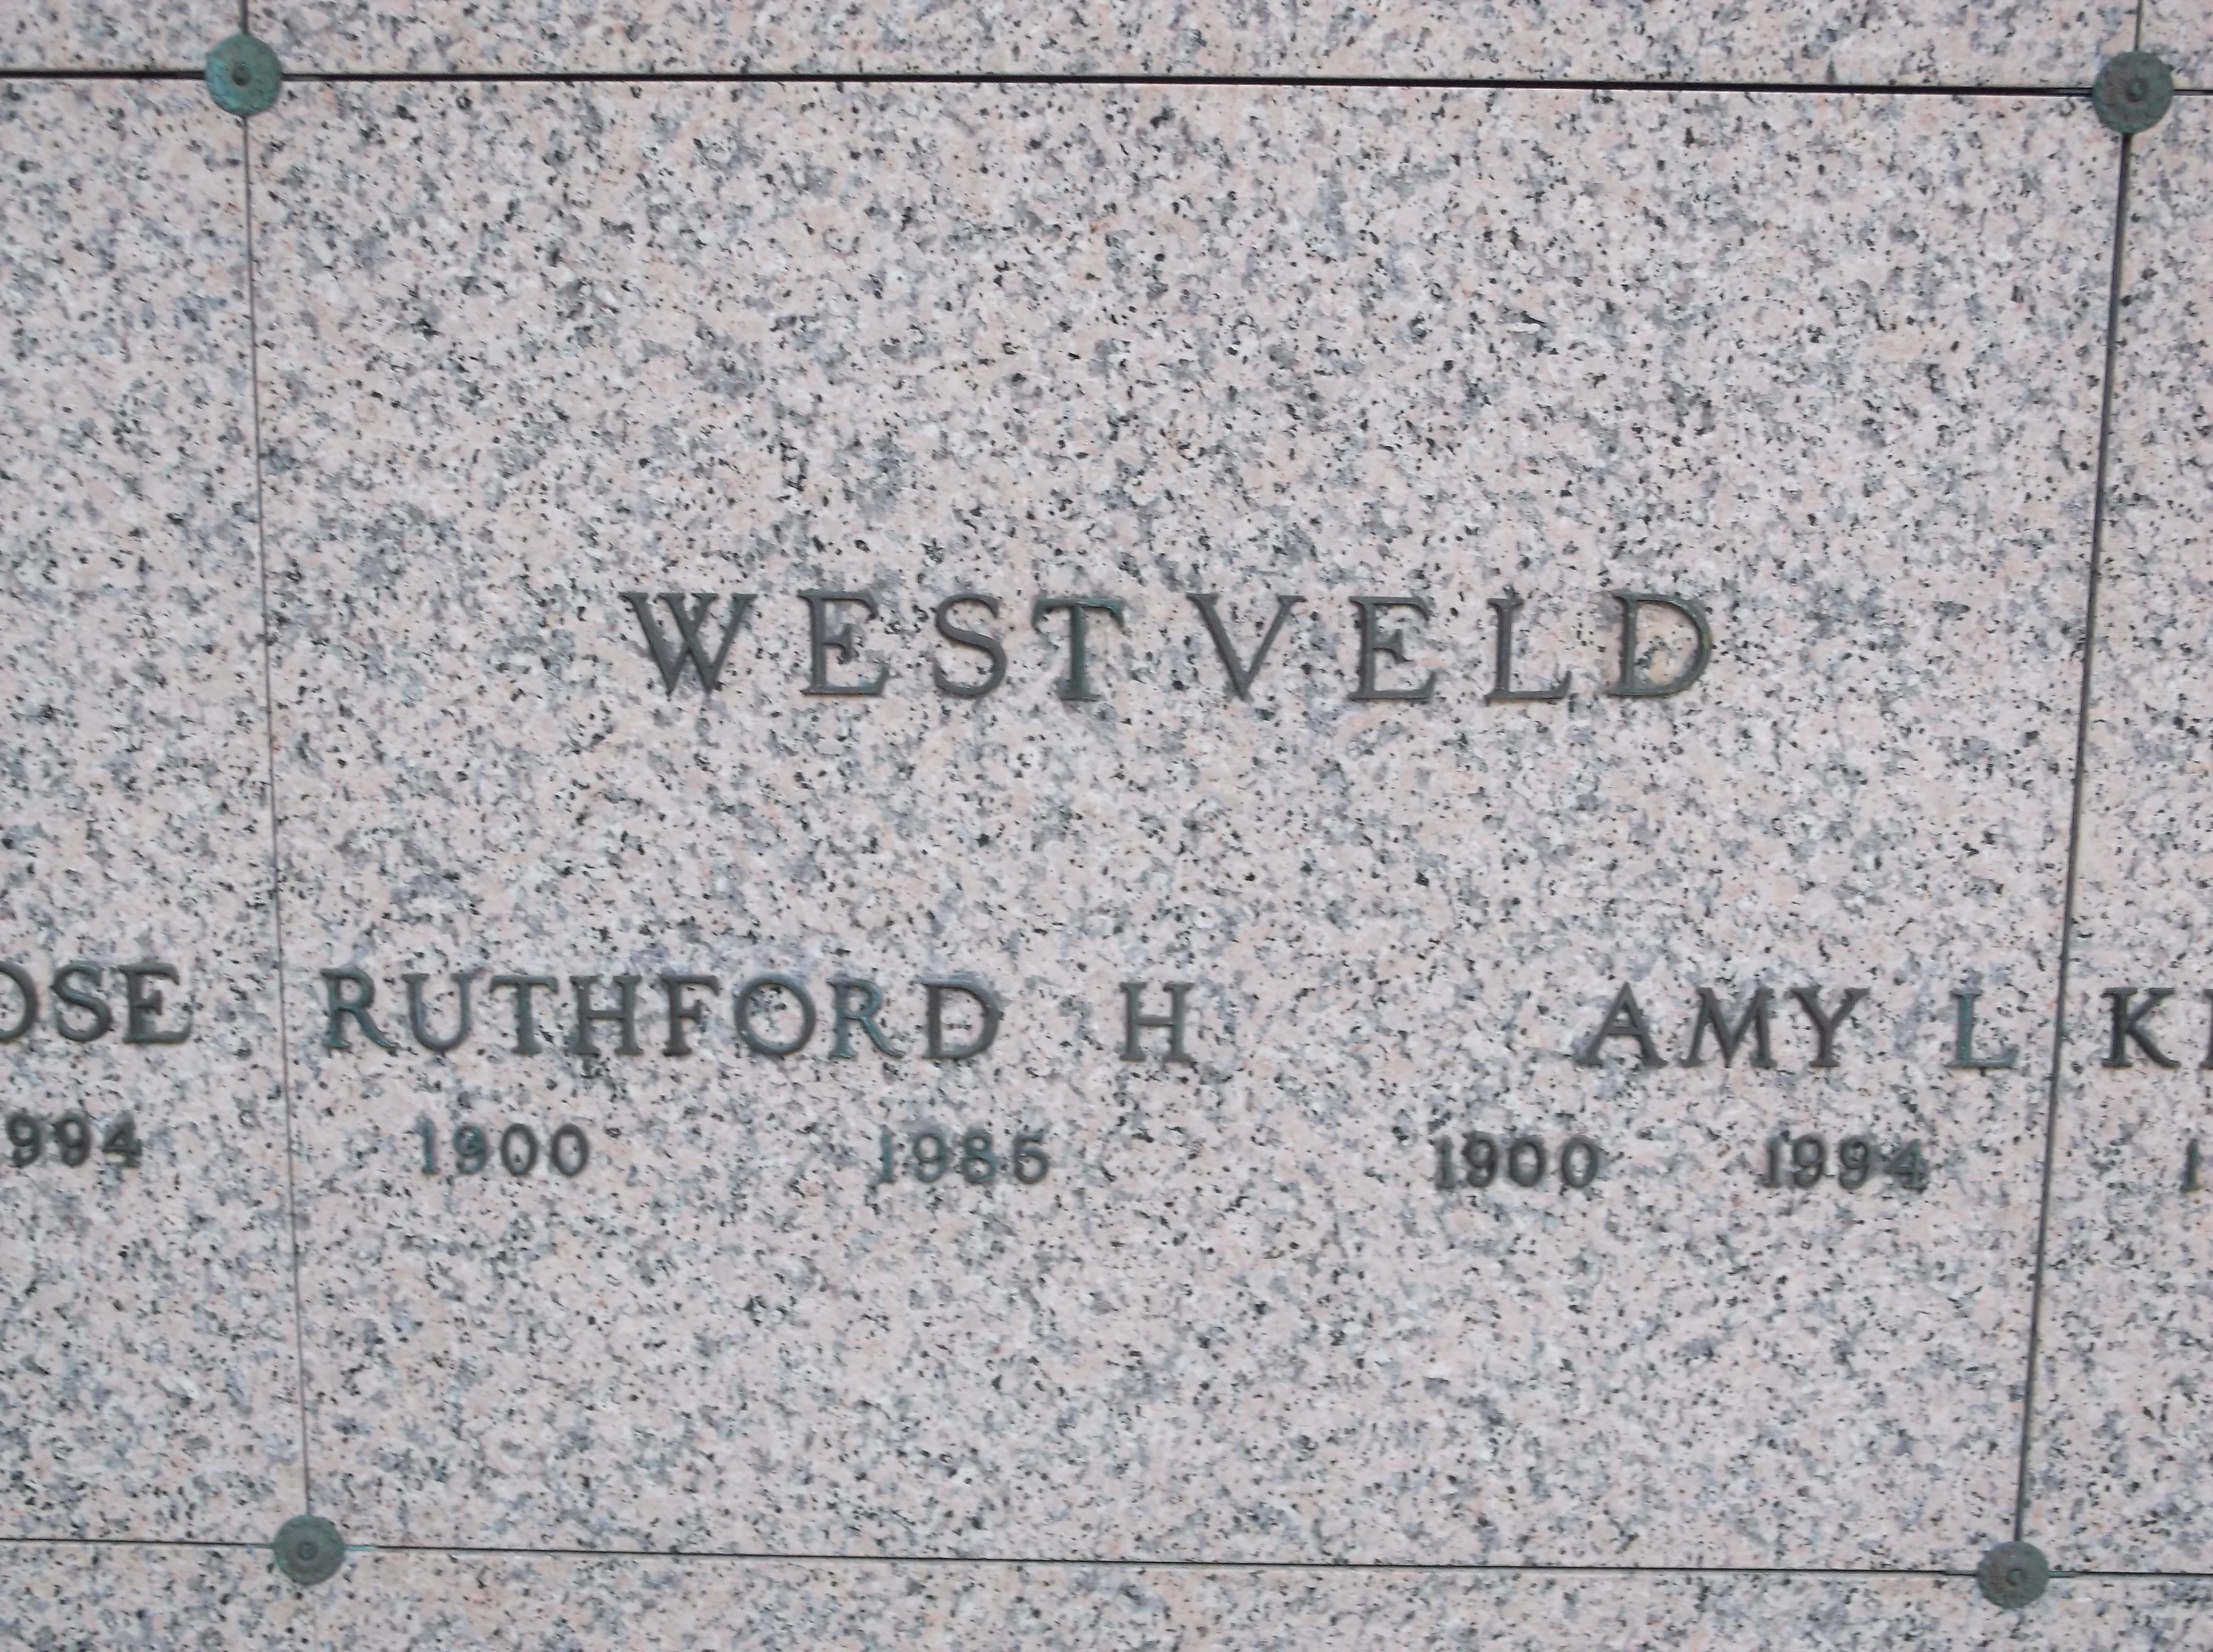 Ruthford H Westveld